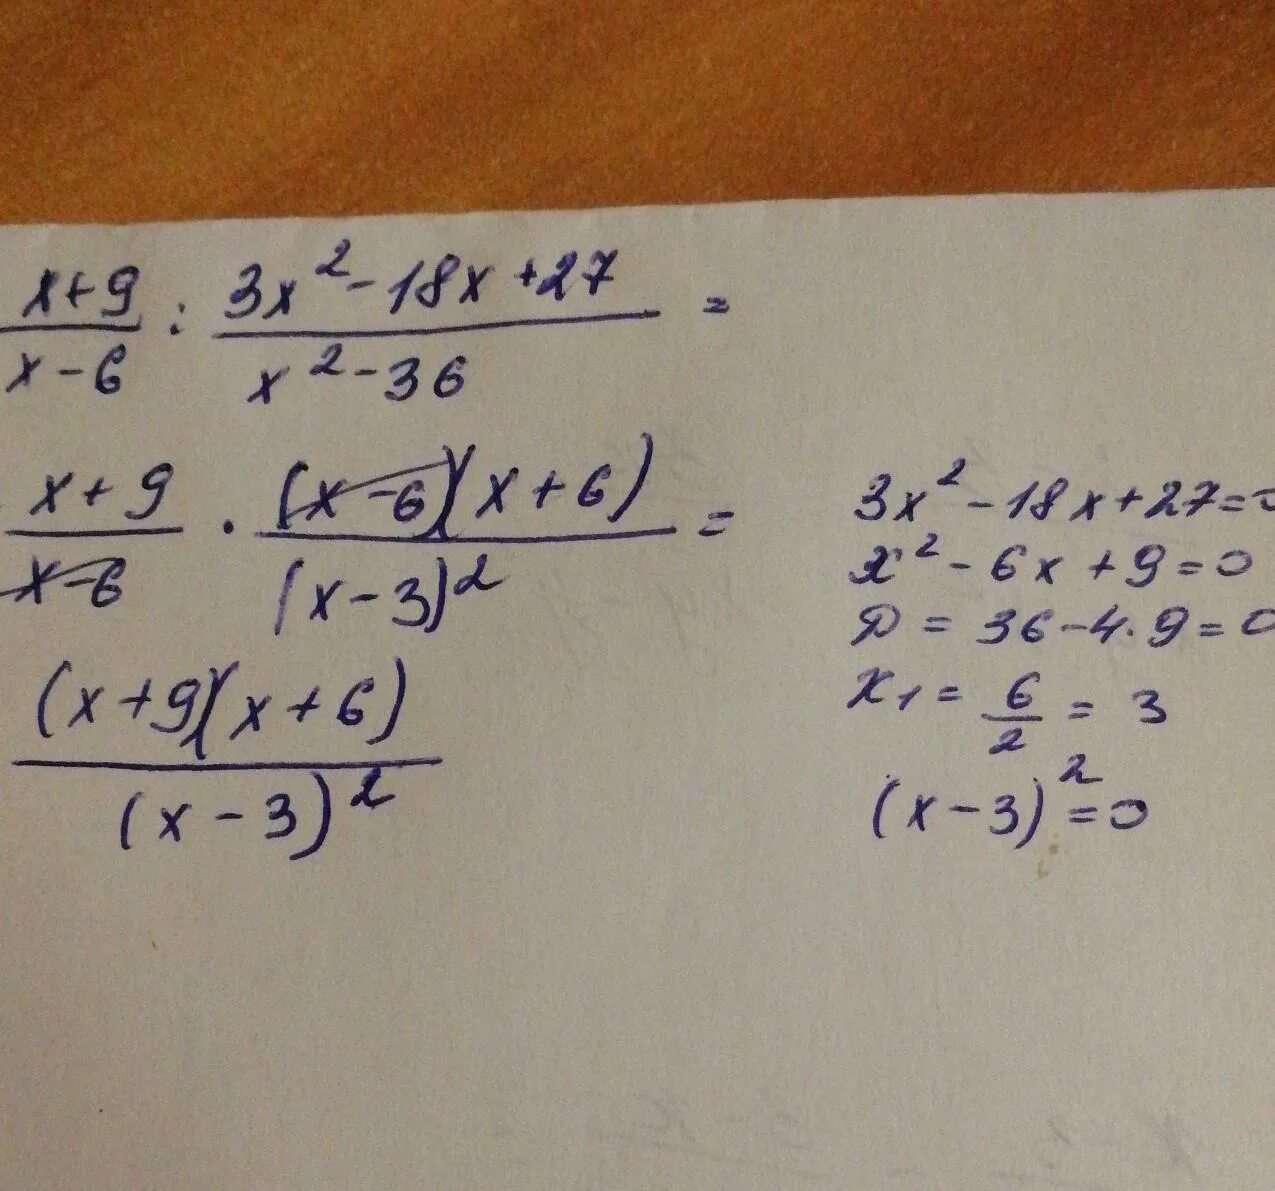 Упростите выражение x2 9 x2 3x. Упростить выражение x2-9/x-6 2 - 27 6x-x 2. X-9/x2-9 3/3x-x2 упростите выражение. 3/X+3+3/x2-3x+2x/9-x2 упростите выражение. X^3-9x^2+27x-27.